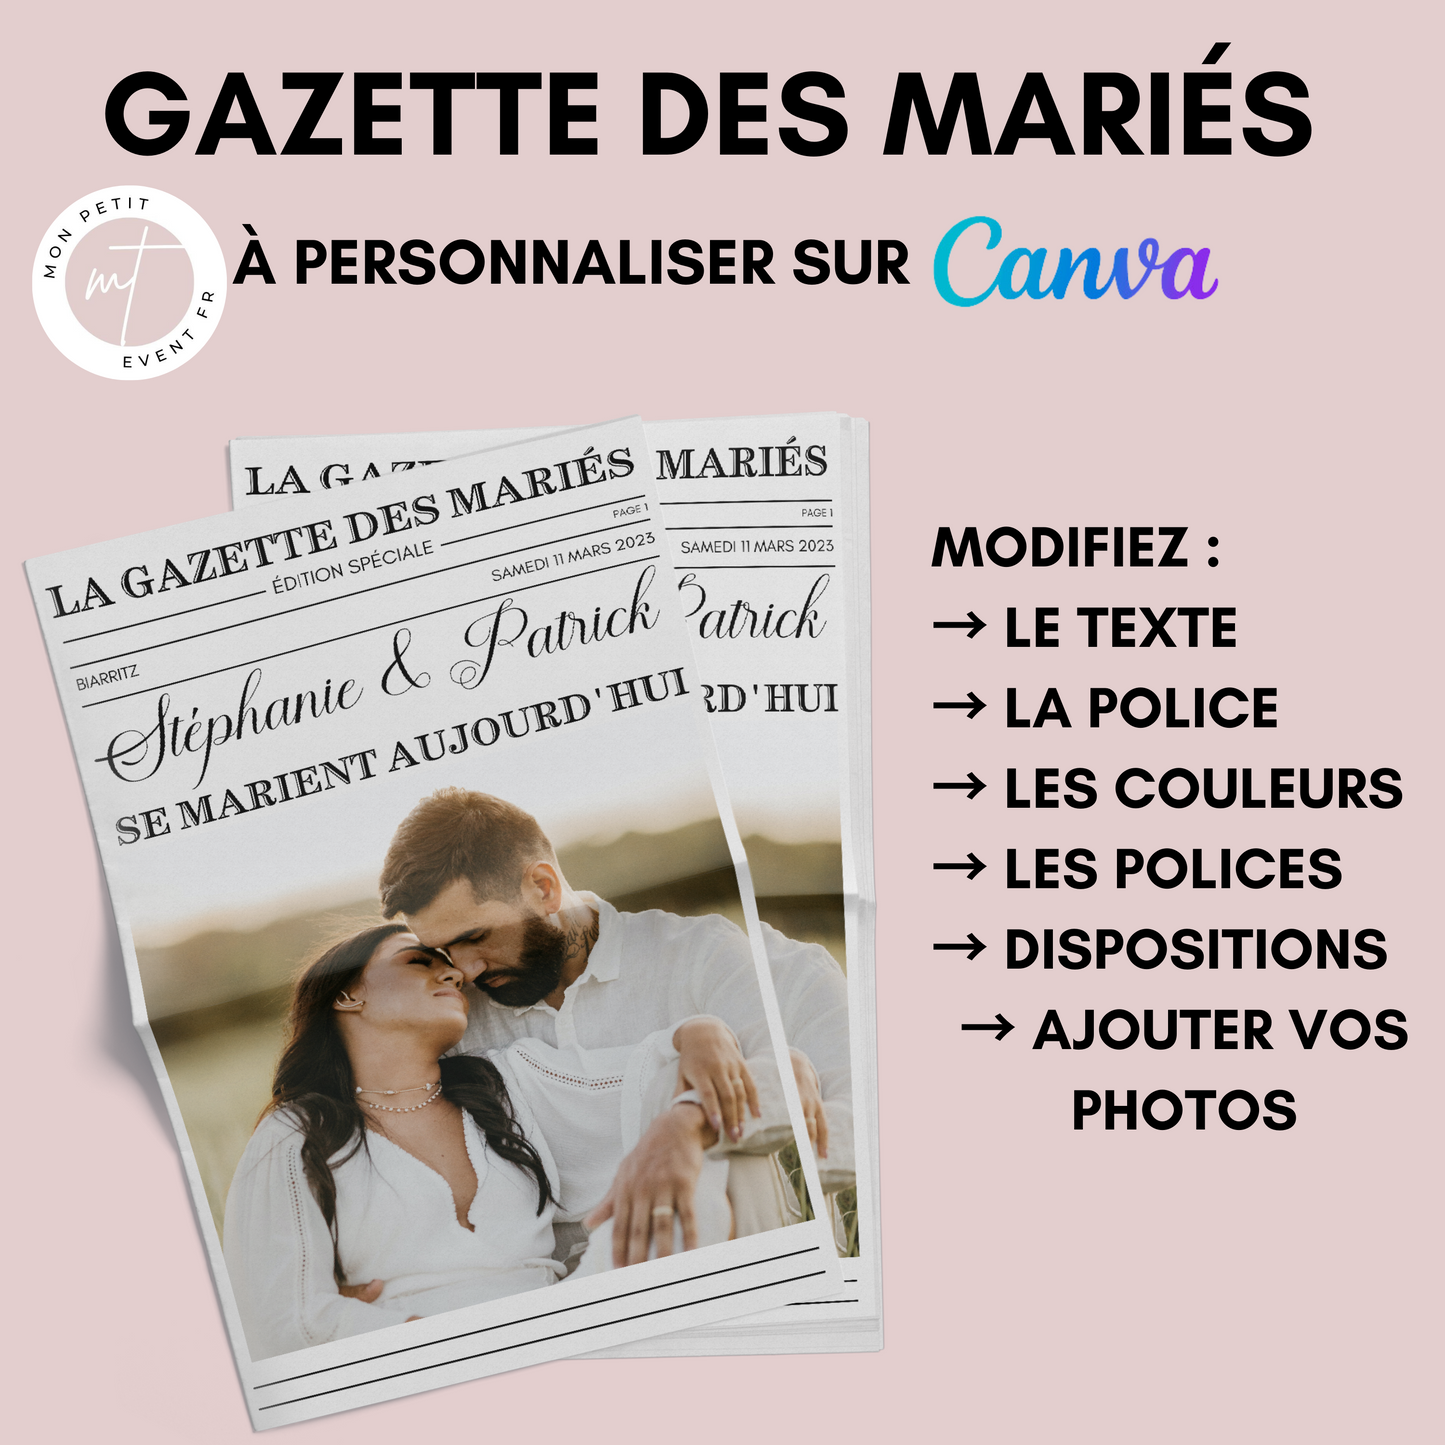 Gazette de Mariage à Personnaliser sur Canva : Modèle DIY Gazette des mariés Format A3 et A4 pour une Célébration Inoubliable -